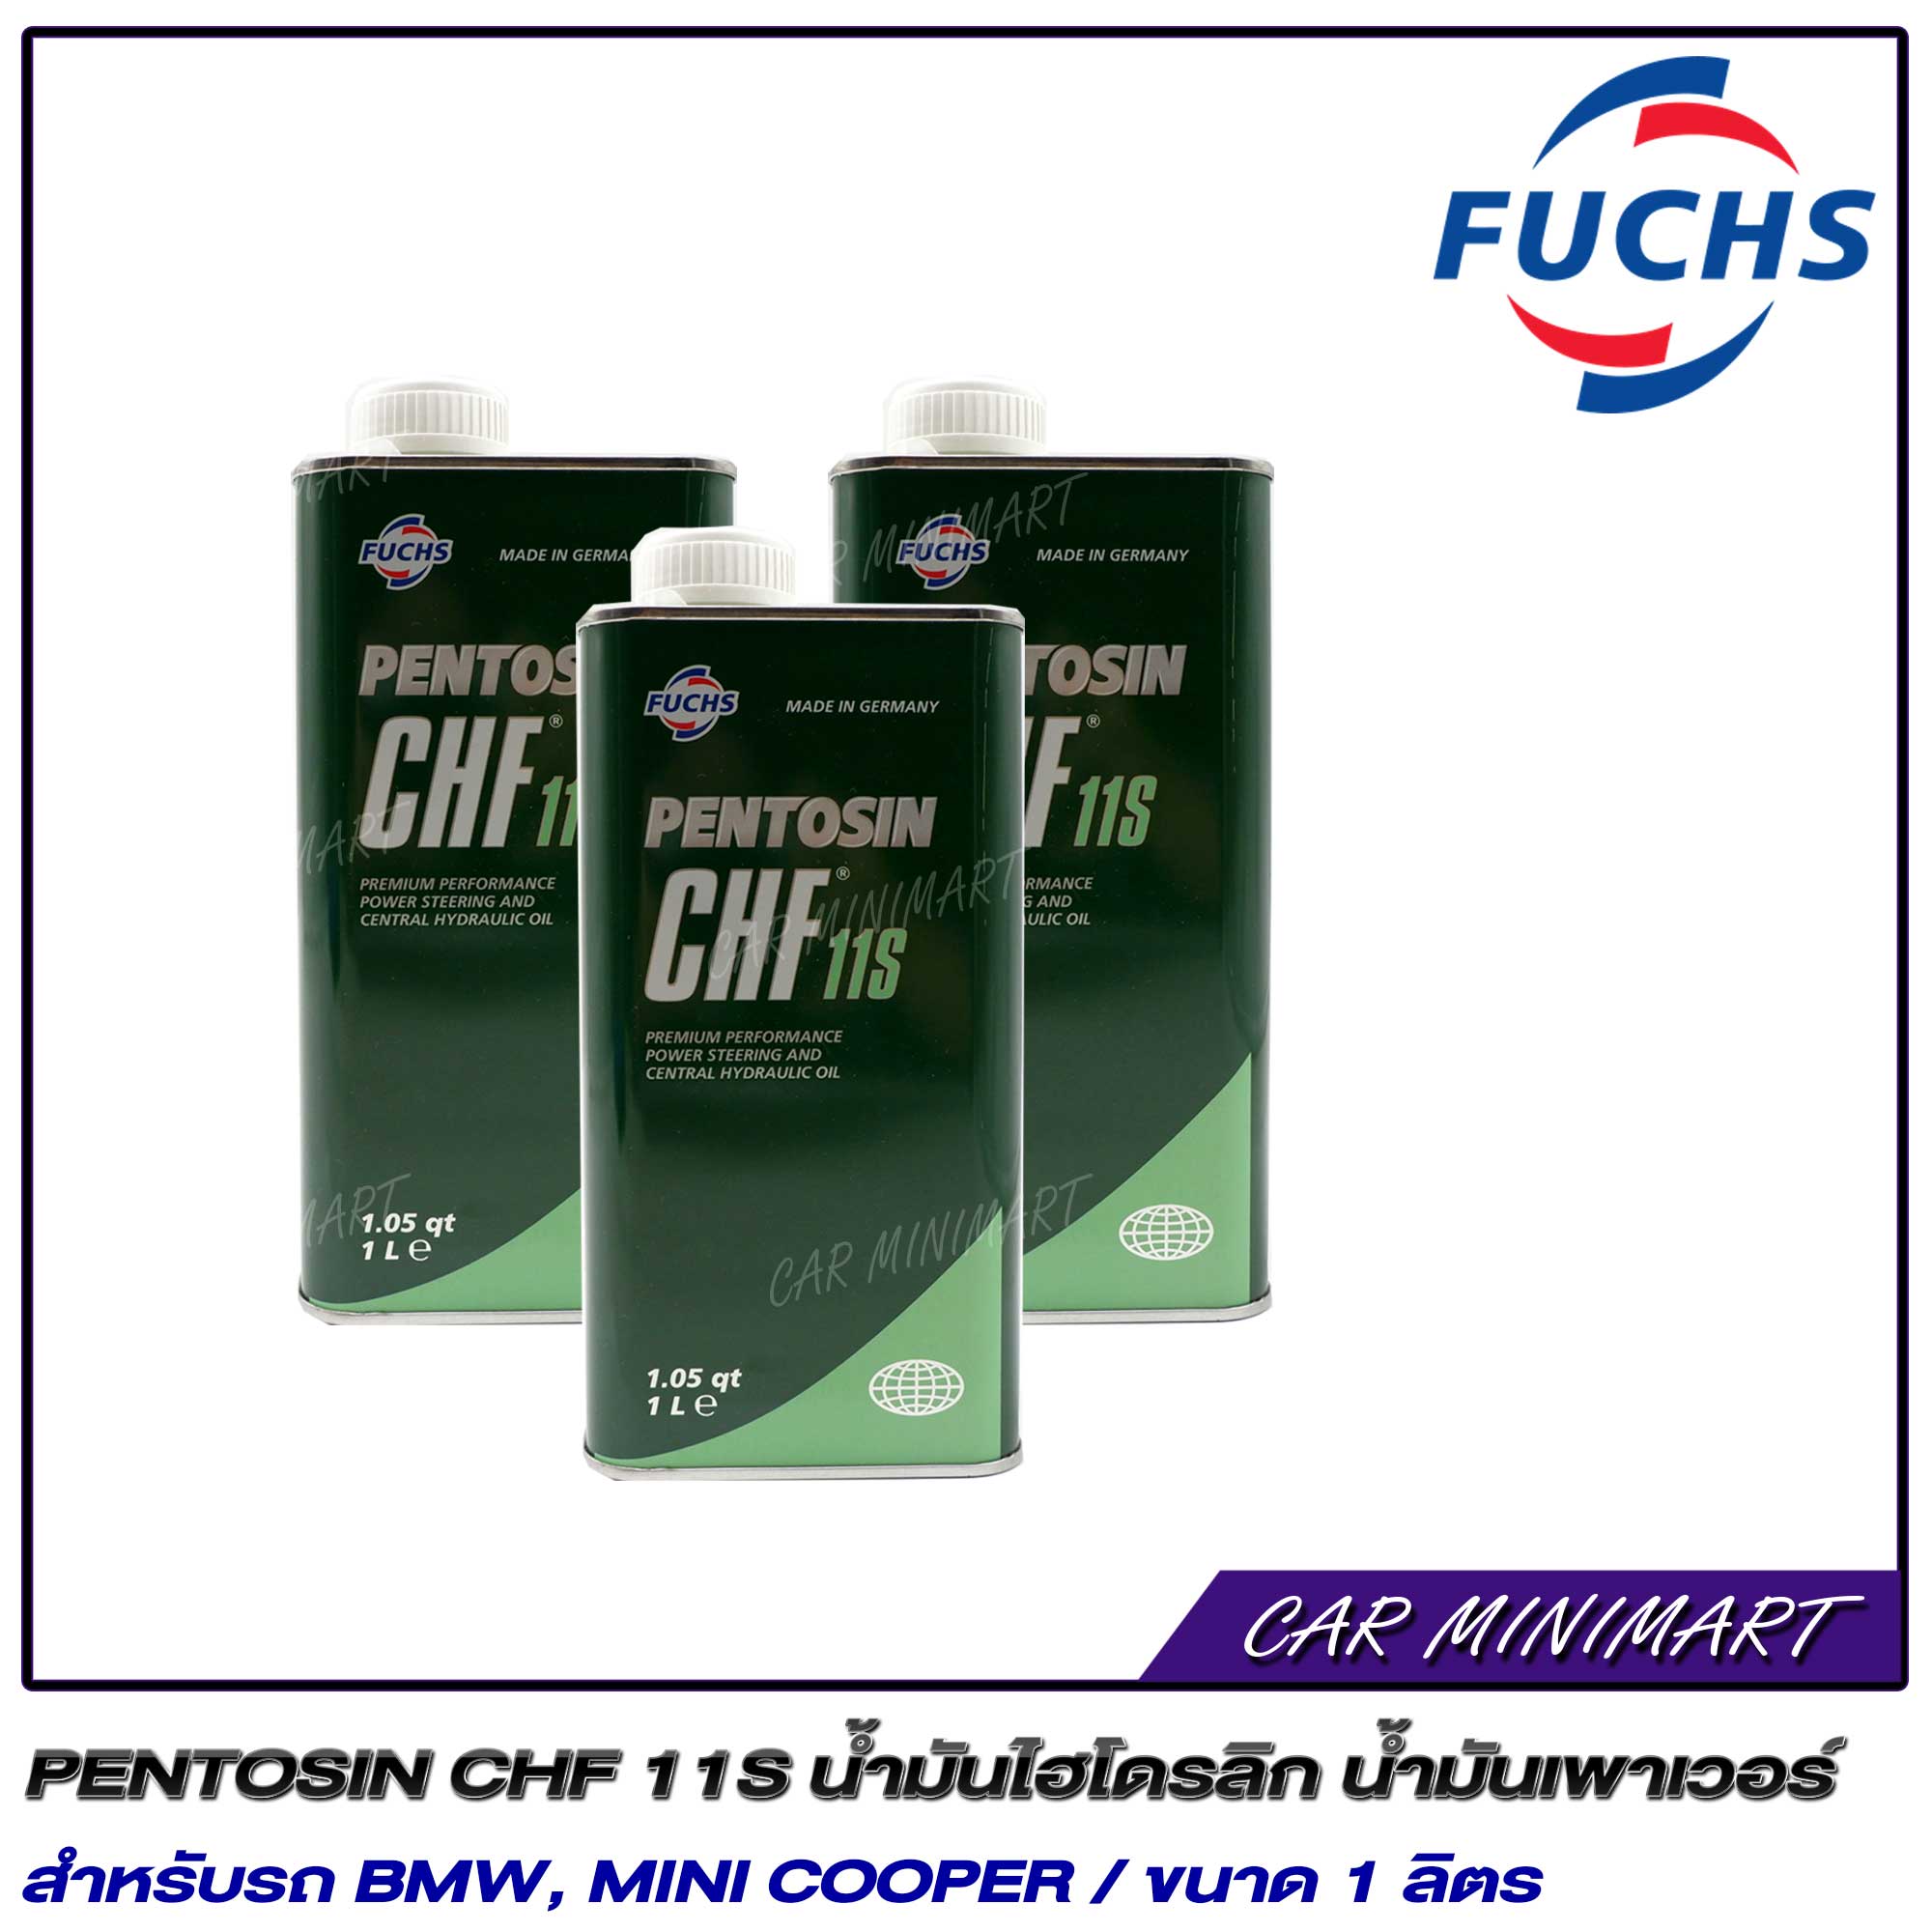 PENTOSIN CHF 11S น้ำมันไฮโดรลิก น้ำมันเพาเวอร์ สำหรับรถ BMW, MINI COOPER / ขนาด 1 ลิตร